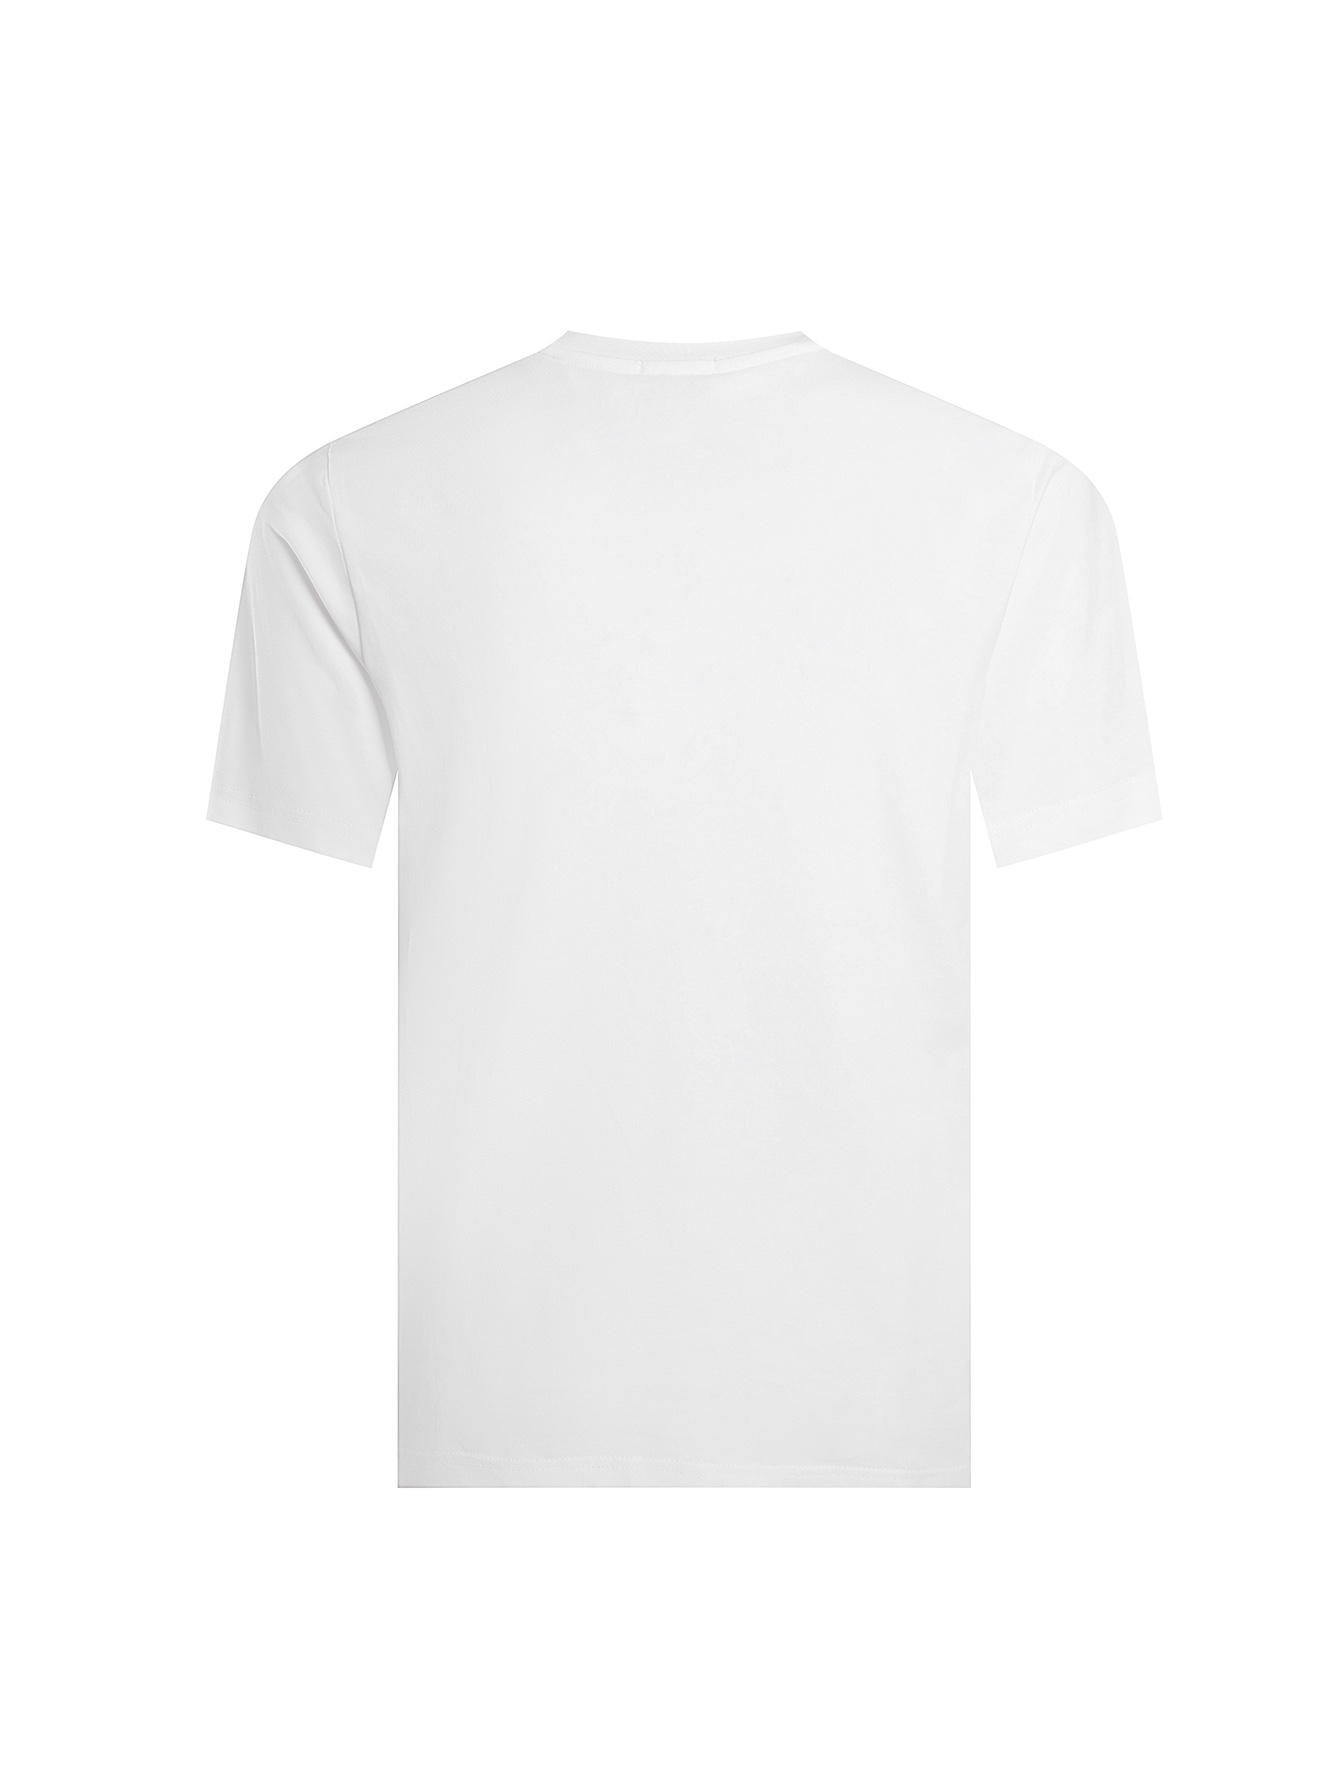 fendi fila t シャツ偽物 トップス 綿100% 短袖 Tシャツ 男女兼用 シンプル ファッション ホワイト_2